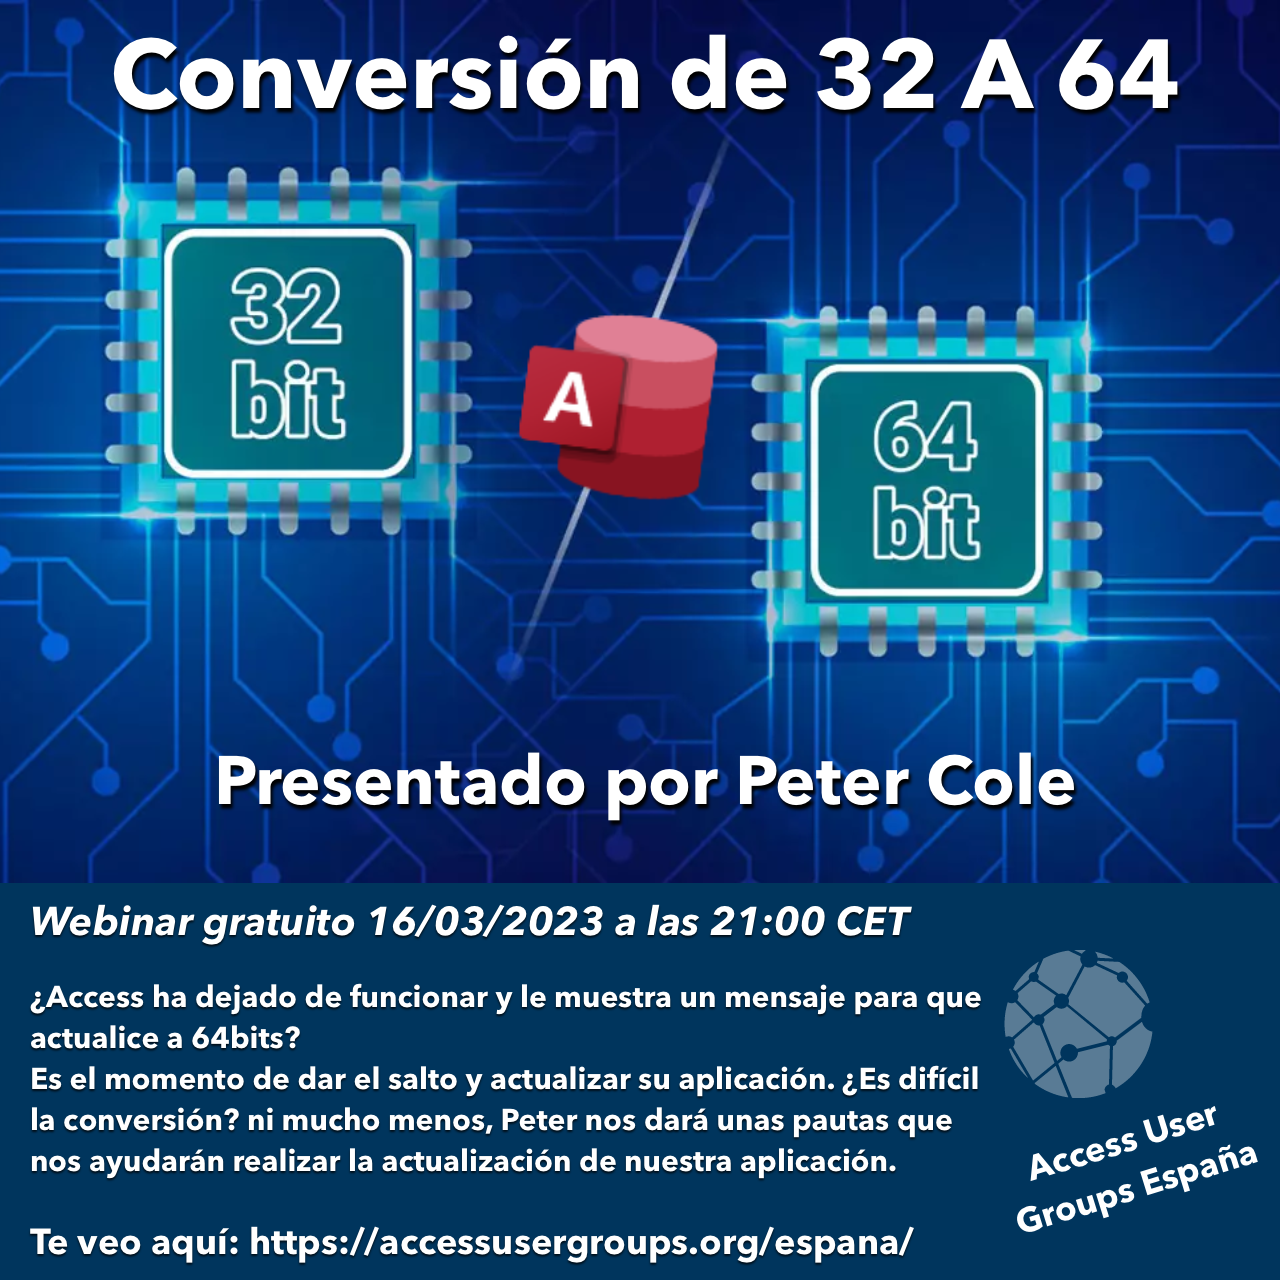 Conversión de 32 bits a 64 bits (Peter Cole)